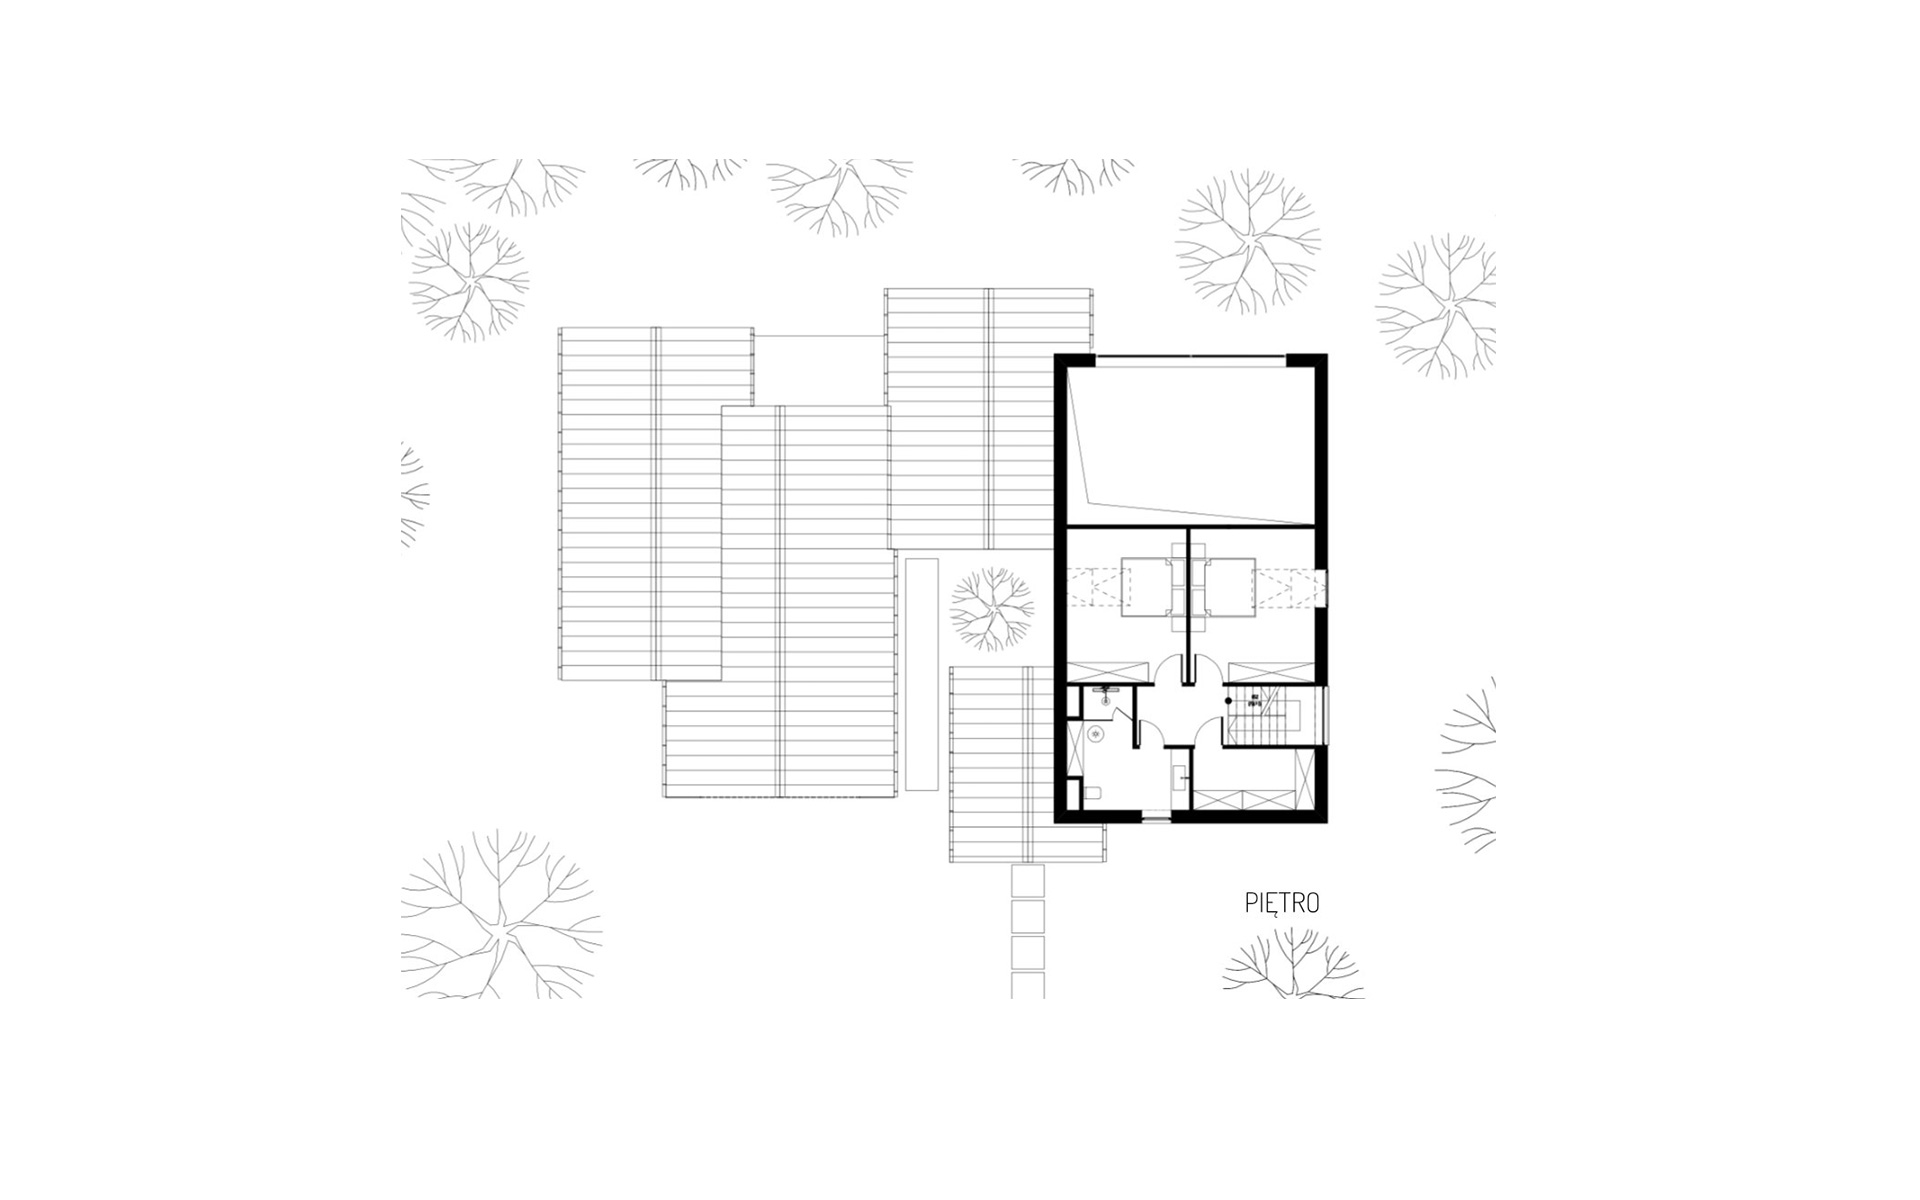 Obraz projektu piętra domu letniskowego z dachem dwuspadowym